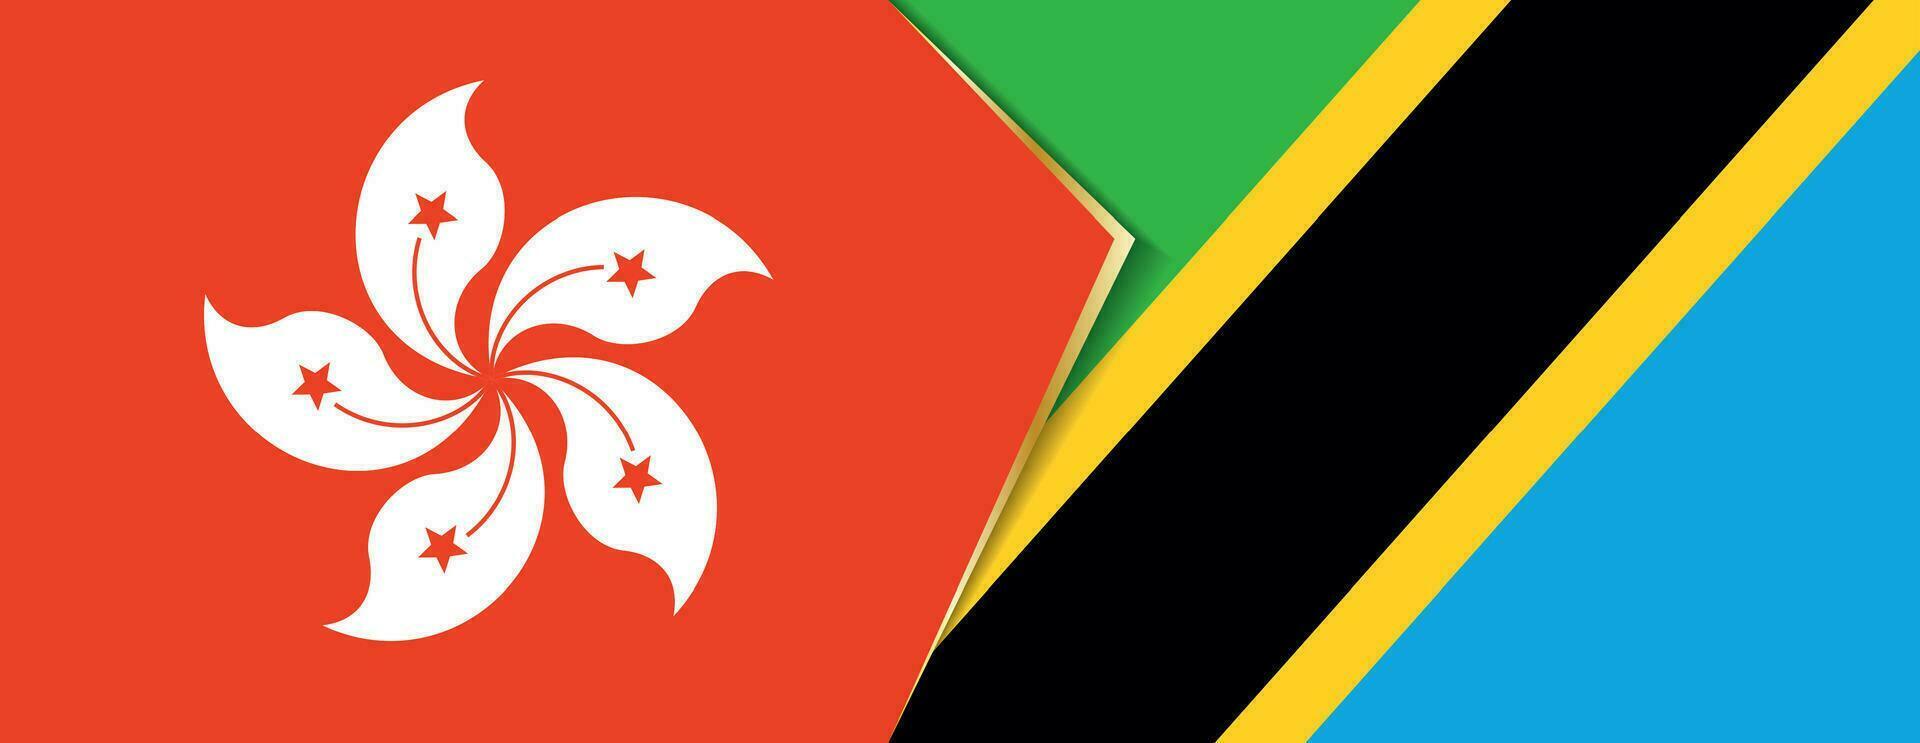 Hong Kong and Tanzania flags, two vector flags.